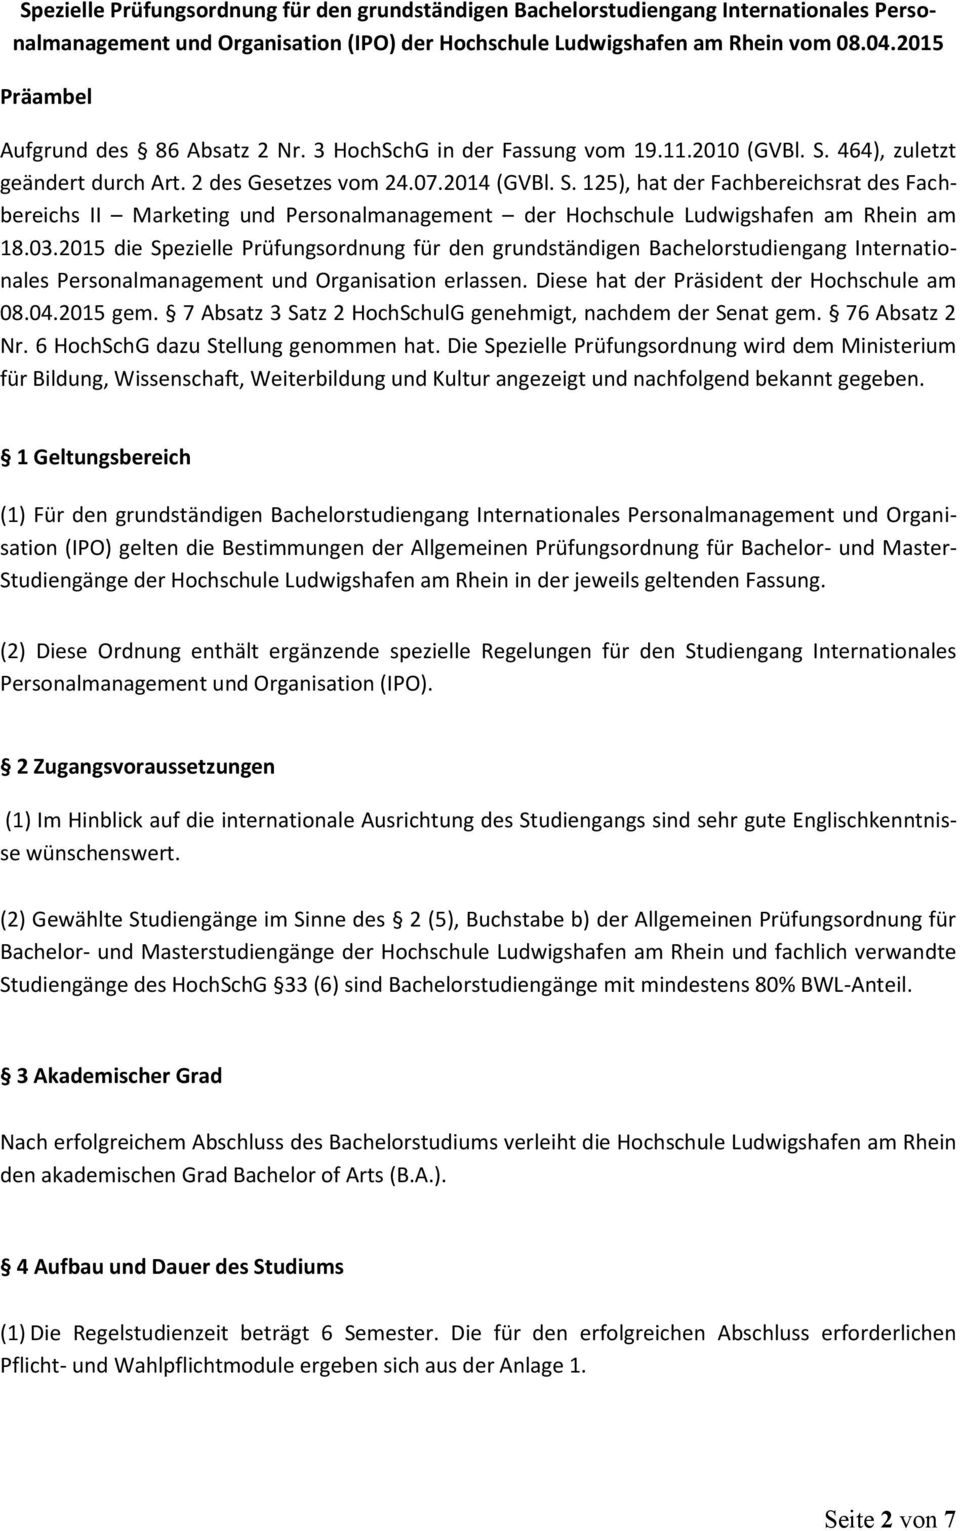 464), zuletzt geändert durch Art. 2 des Gesetzes vom 24.07.2014 (GVBl. S. 125), hat der Fachbereichsrat des Fachbereichs II Marketing und Personalmanagement der Hochschule Ludwigshafen am Rhein am 18.